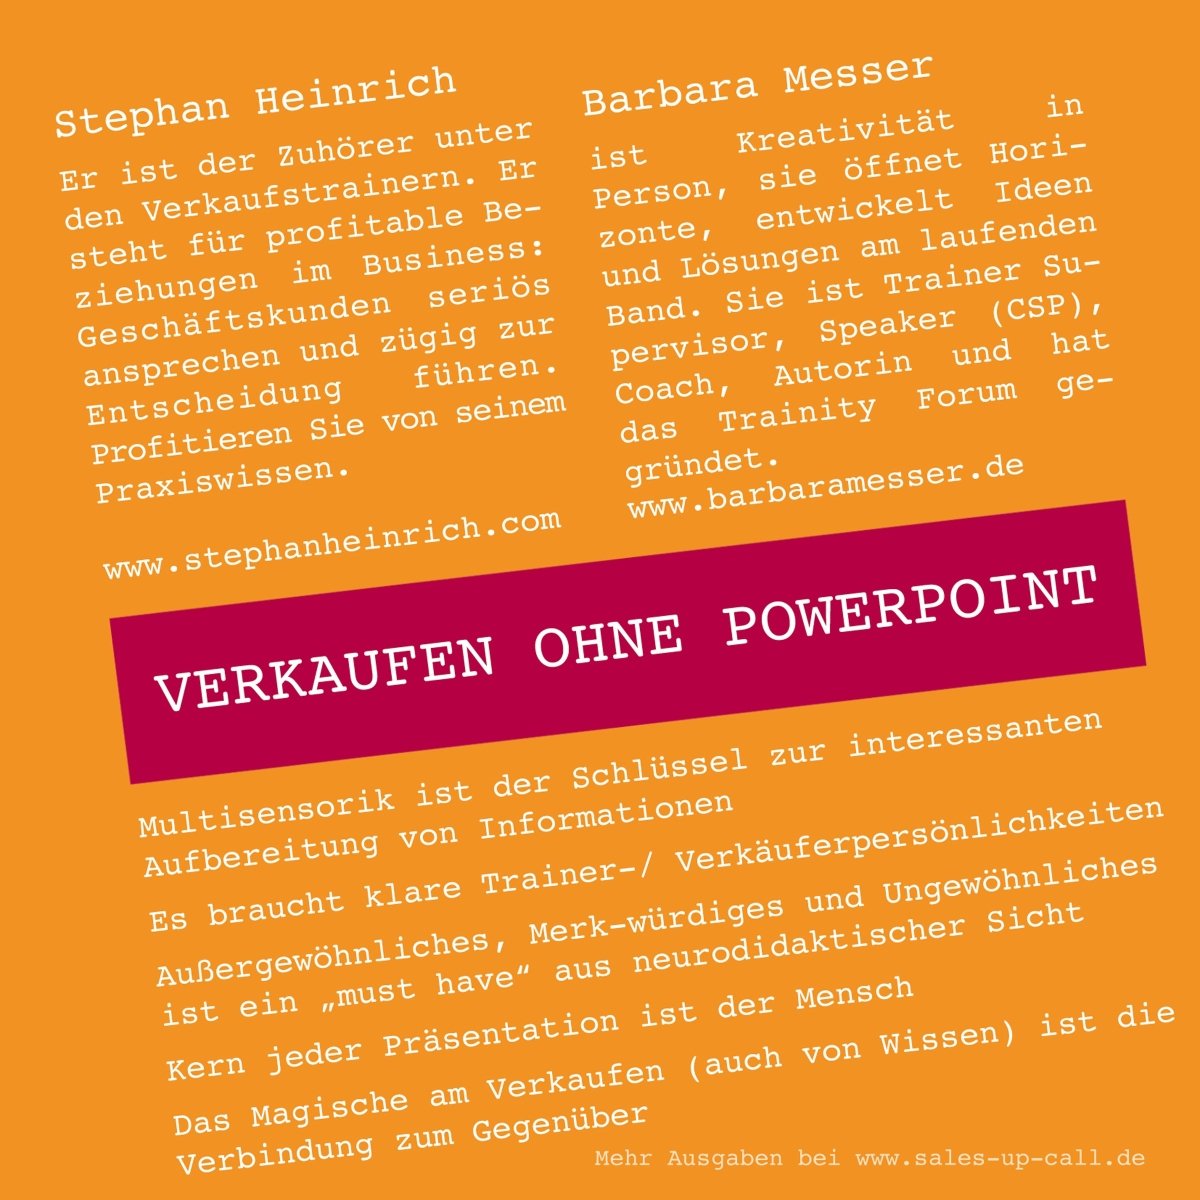 Verkaufen ohne PowerPoint - Sales-up-Call - Stephan Heinrich